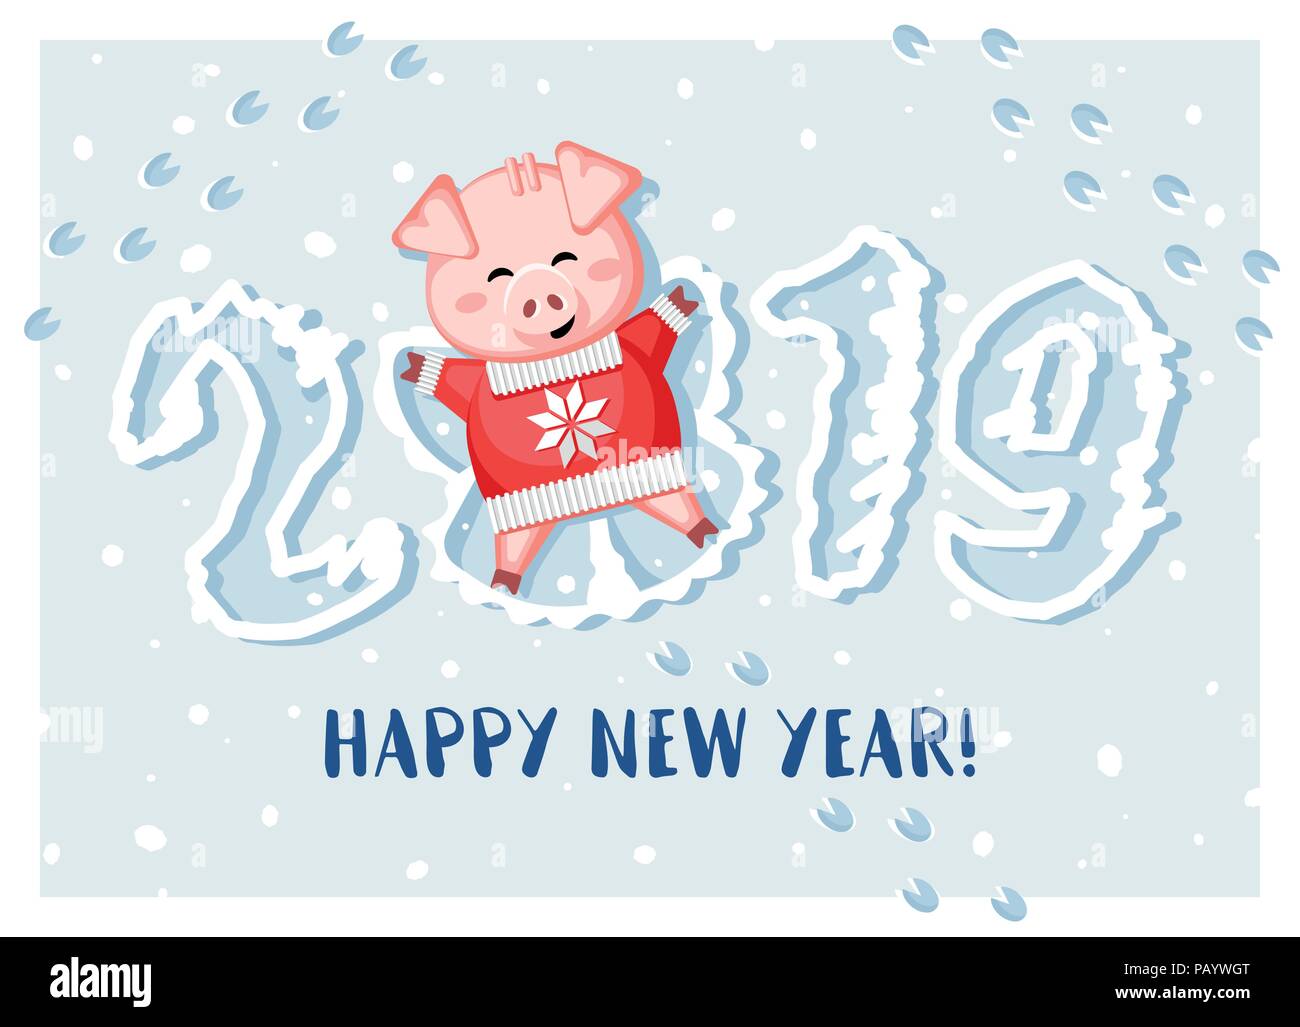 2019. Felice Anno Nuovo! Carino il maiale giacente nella neve e facendo un angelo di neve. Illustrazione Vettoriale. Illustrazione Vettoriale